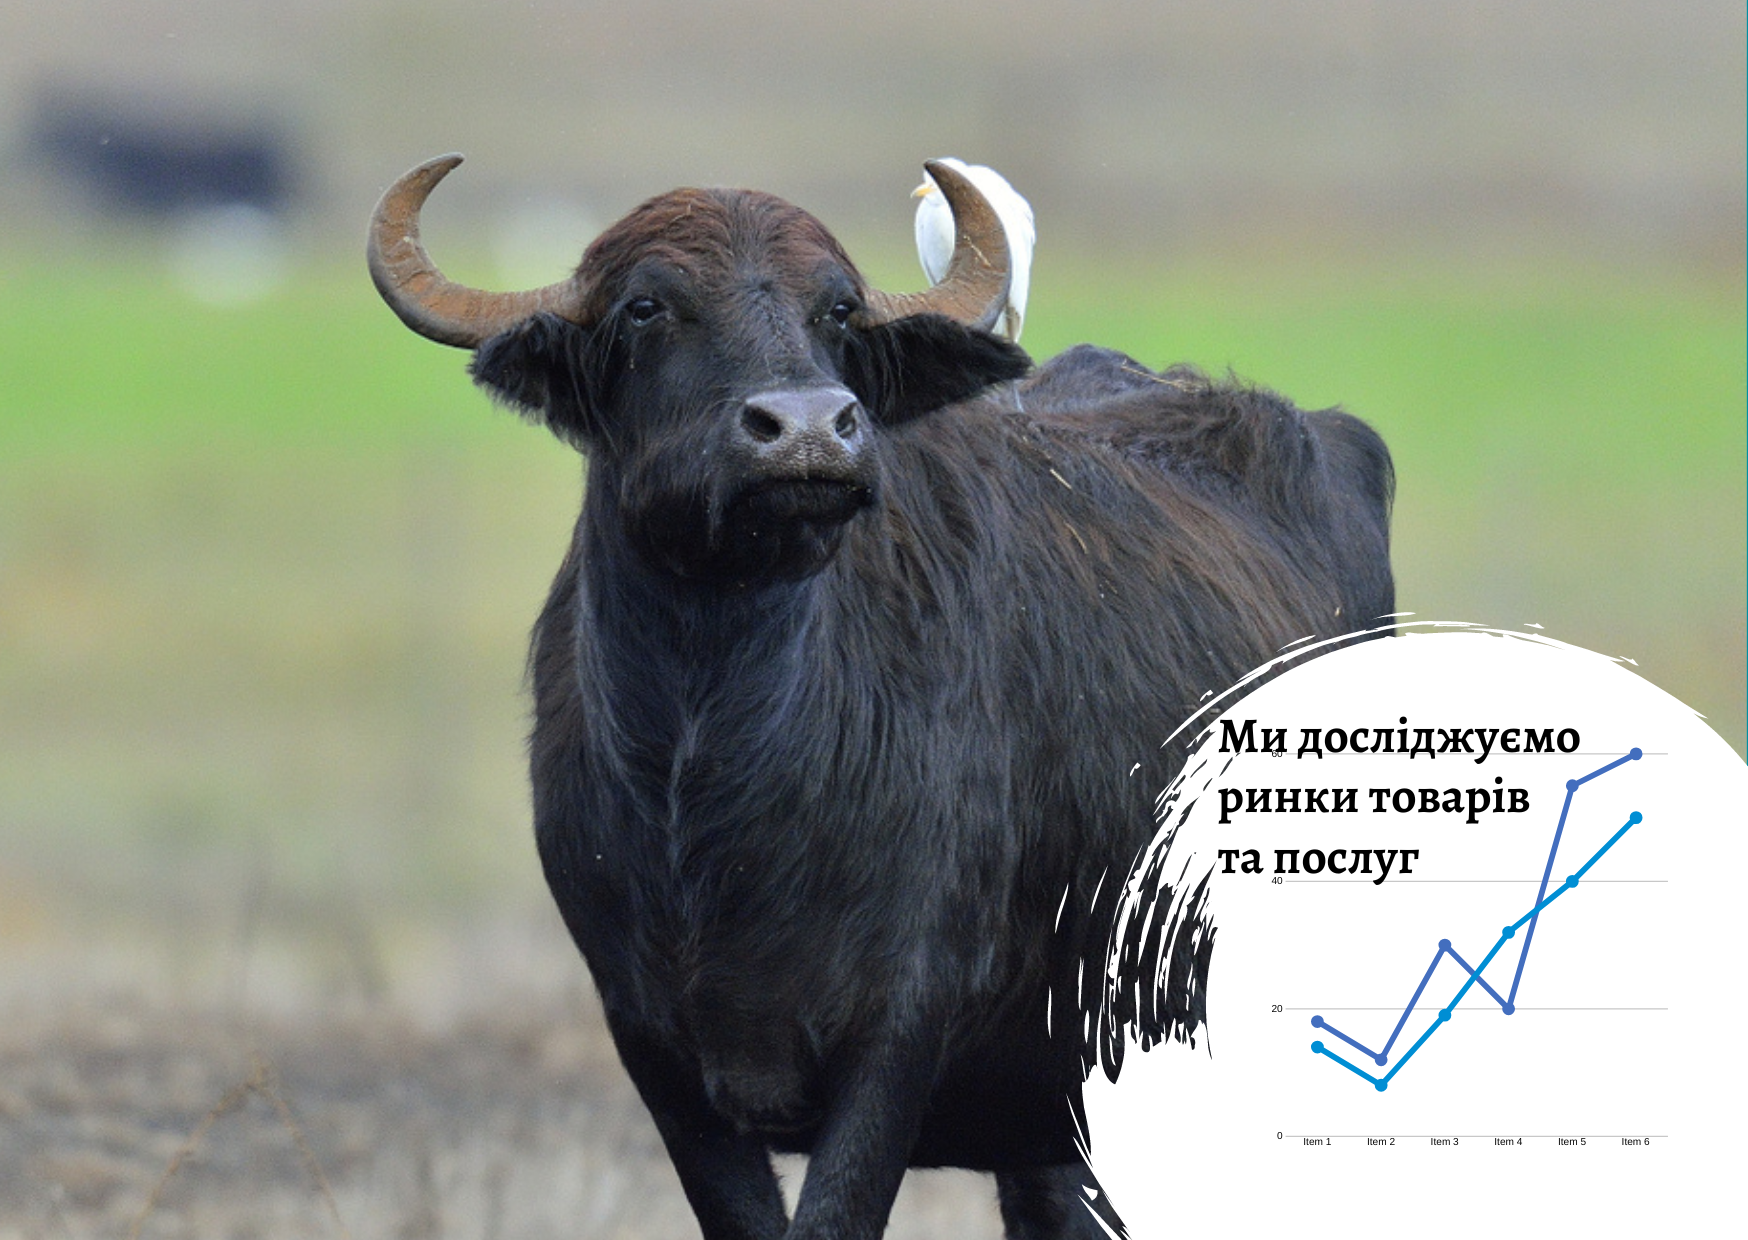 Рынок продукции из буйвола в Украине: проблемы перспективной ниши